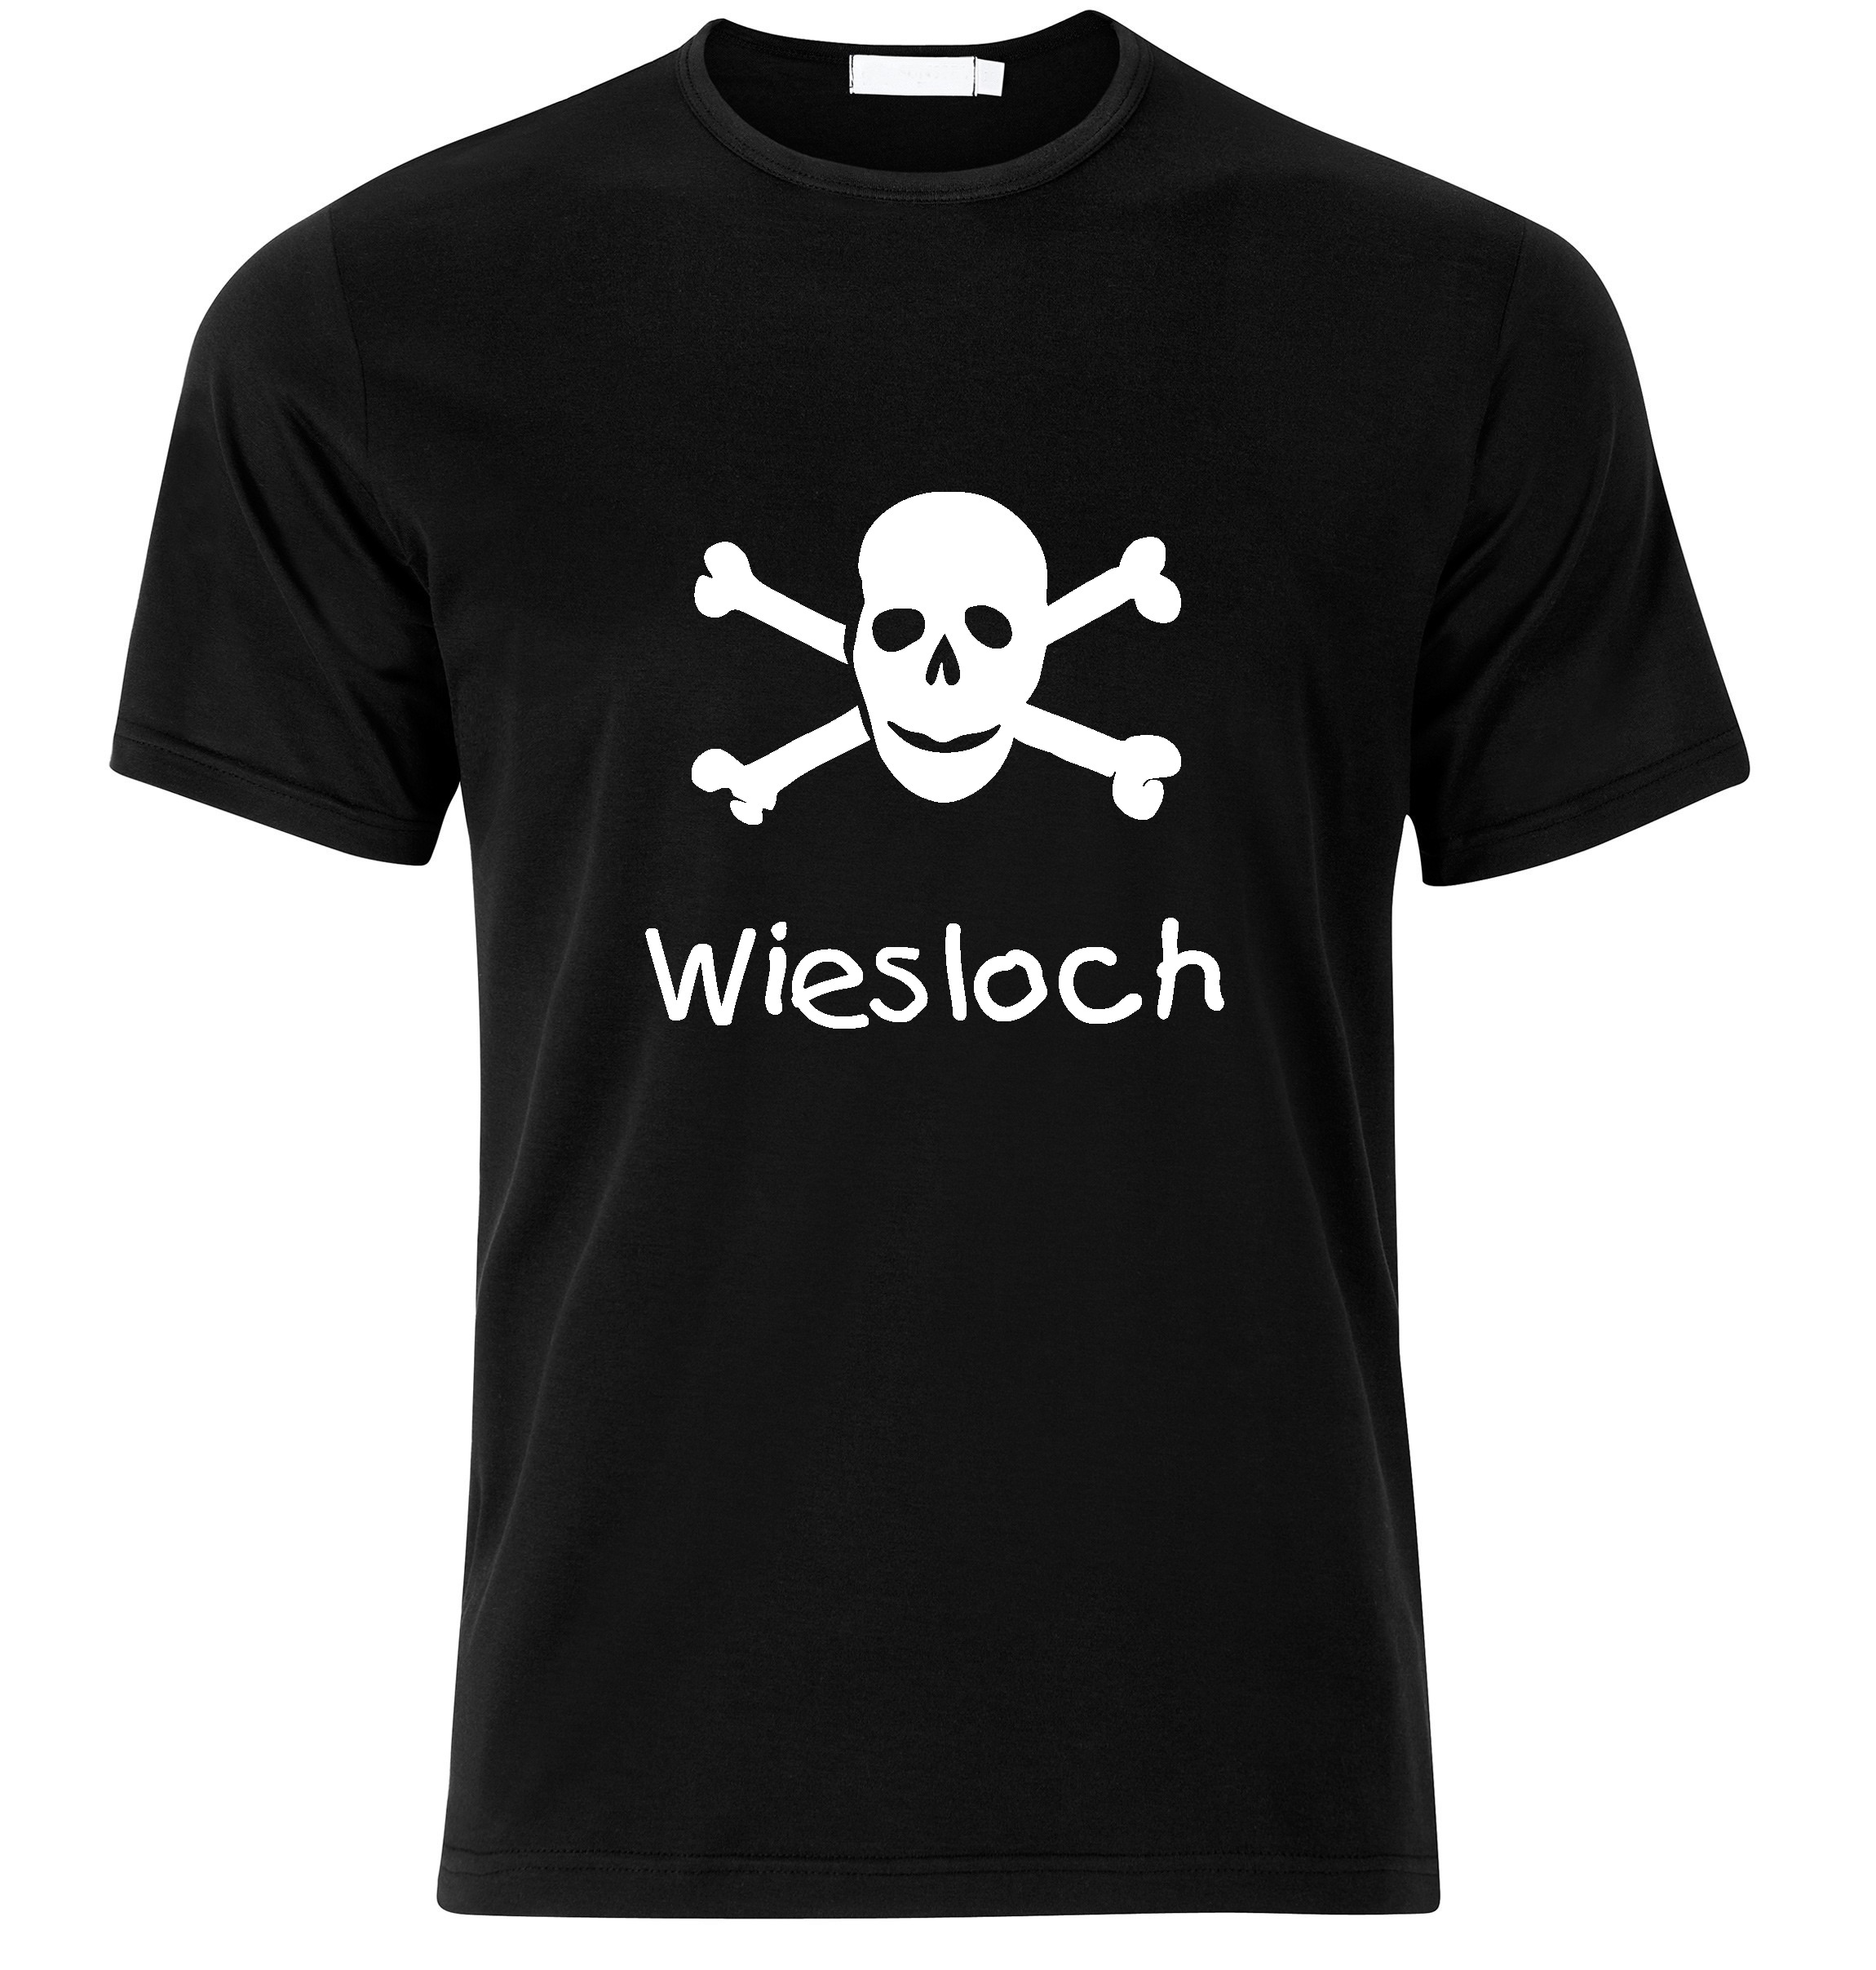 T-Shirt Wiesloch Jolly Roger, Totenkopf